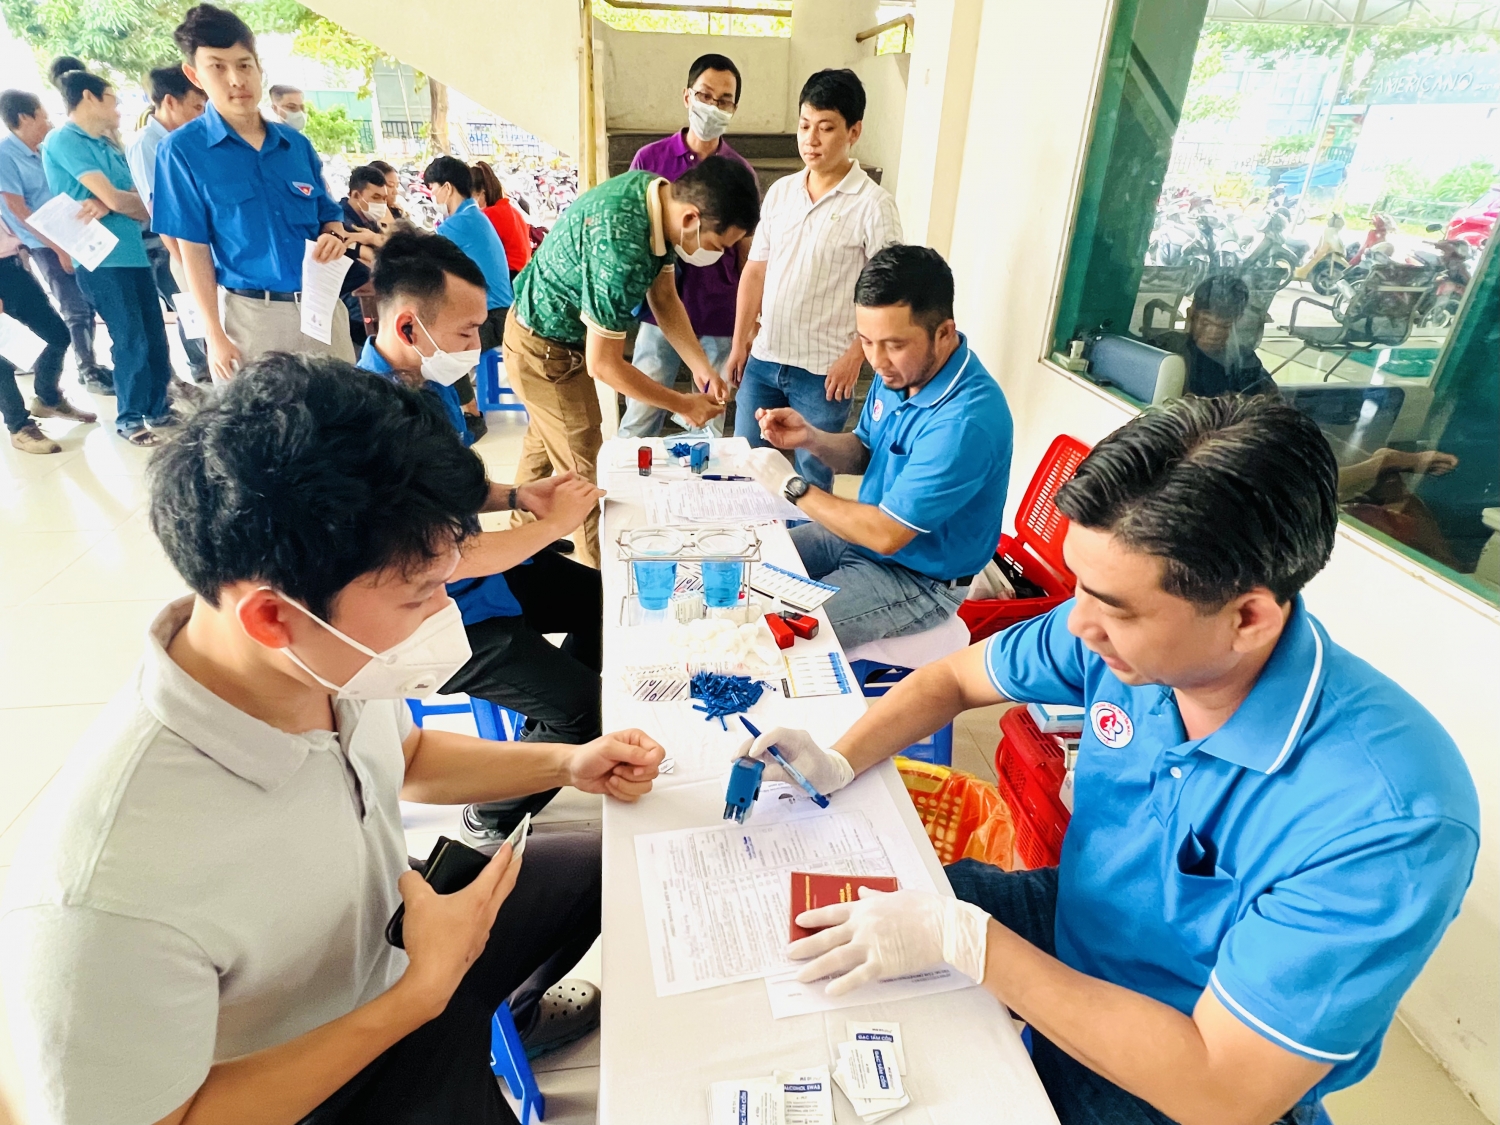 Công đoàn Vietsovpetro tham gia chương trình hiến máu tình nguyện tại Bà Rịa - Vũng Tàu